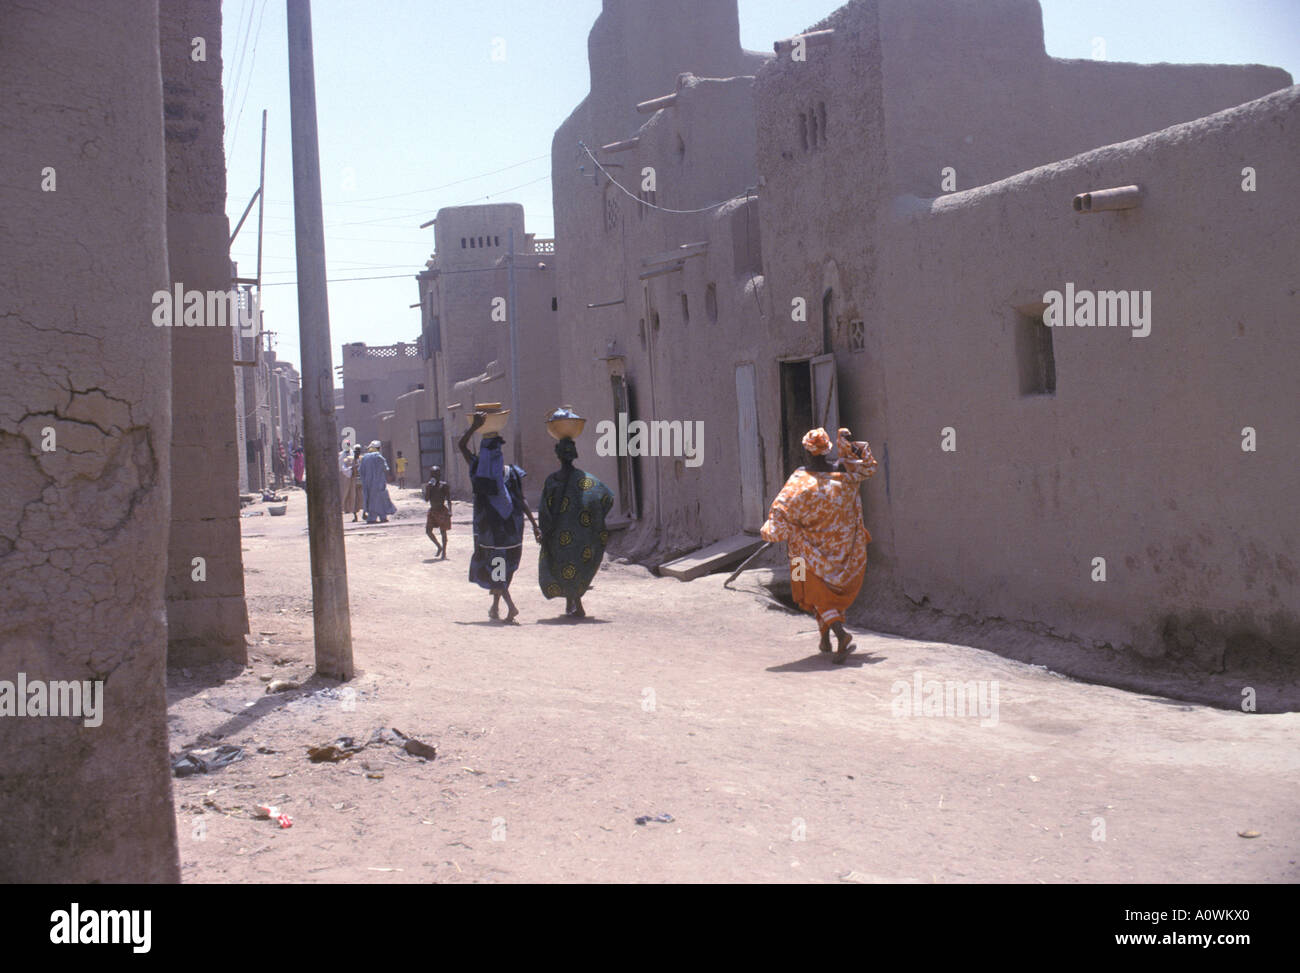 Street scene in Mopti Mali Stock Photo